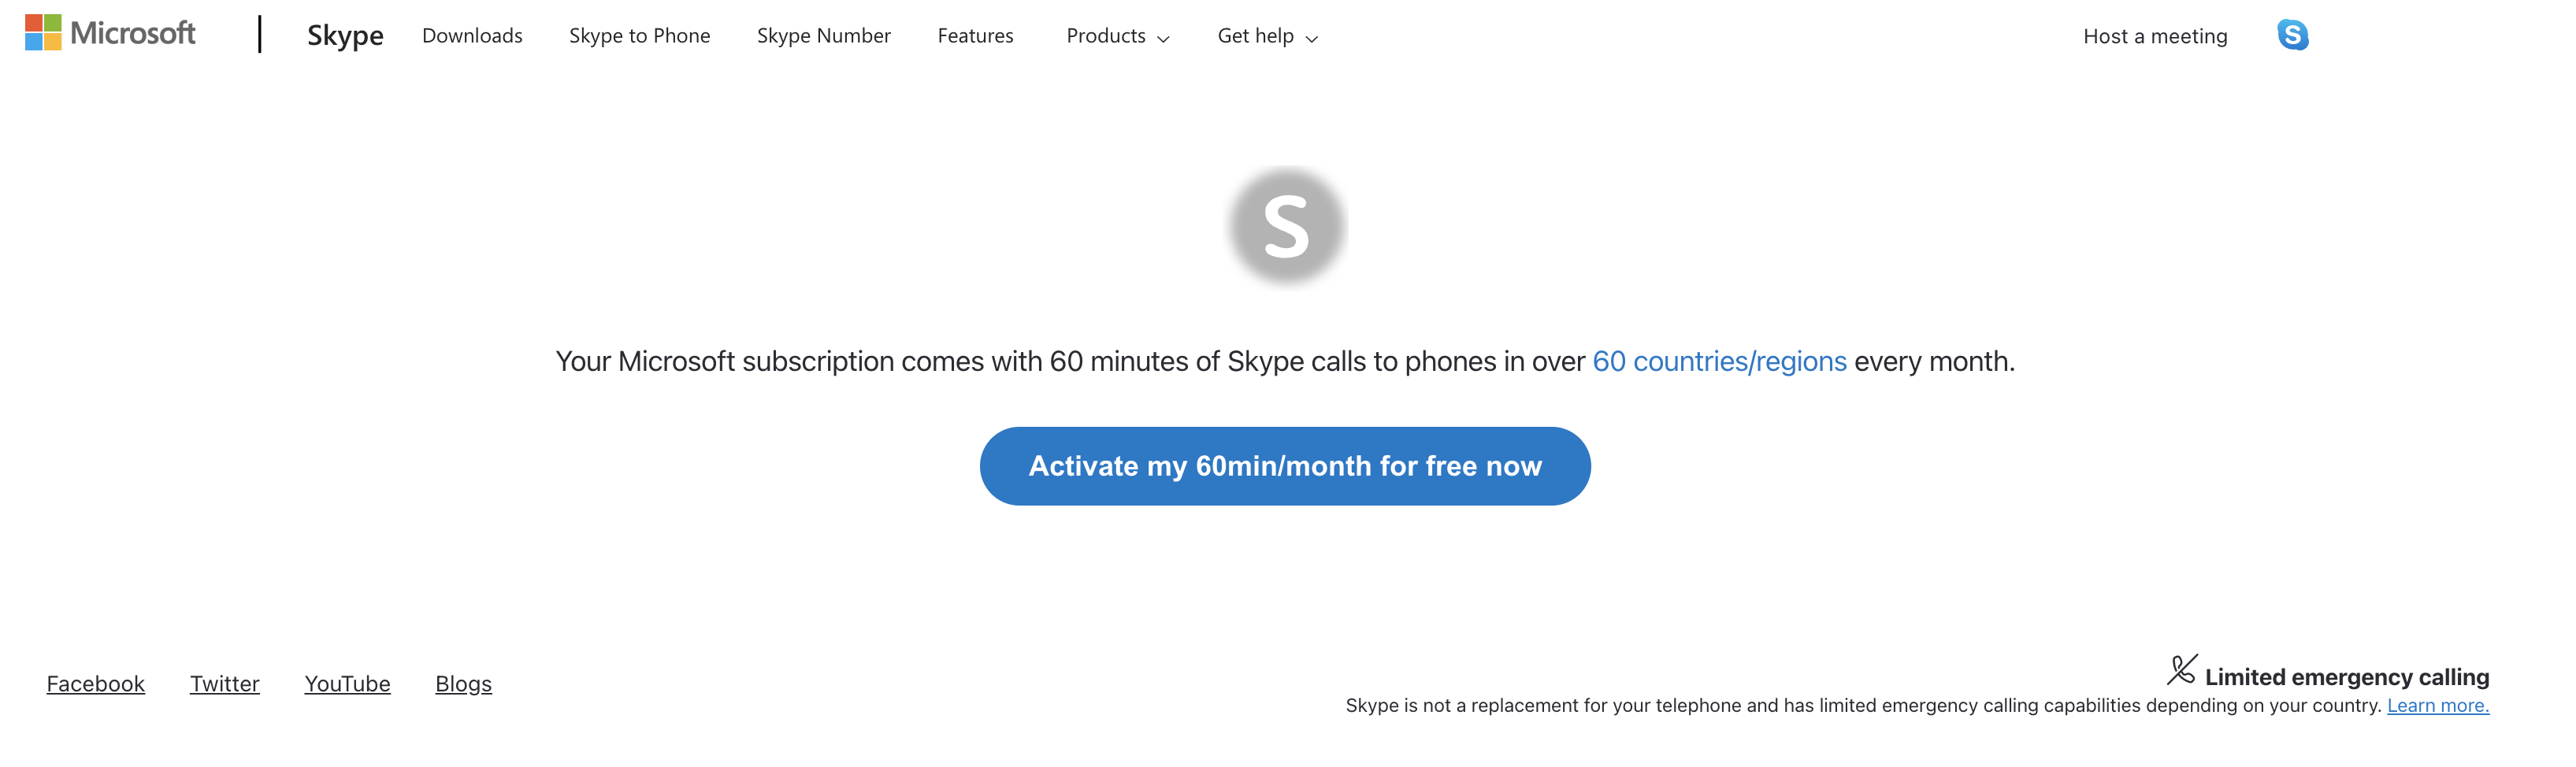 Веб-страница для активации бесплатной 60 минут в Skype